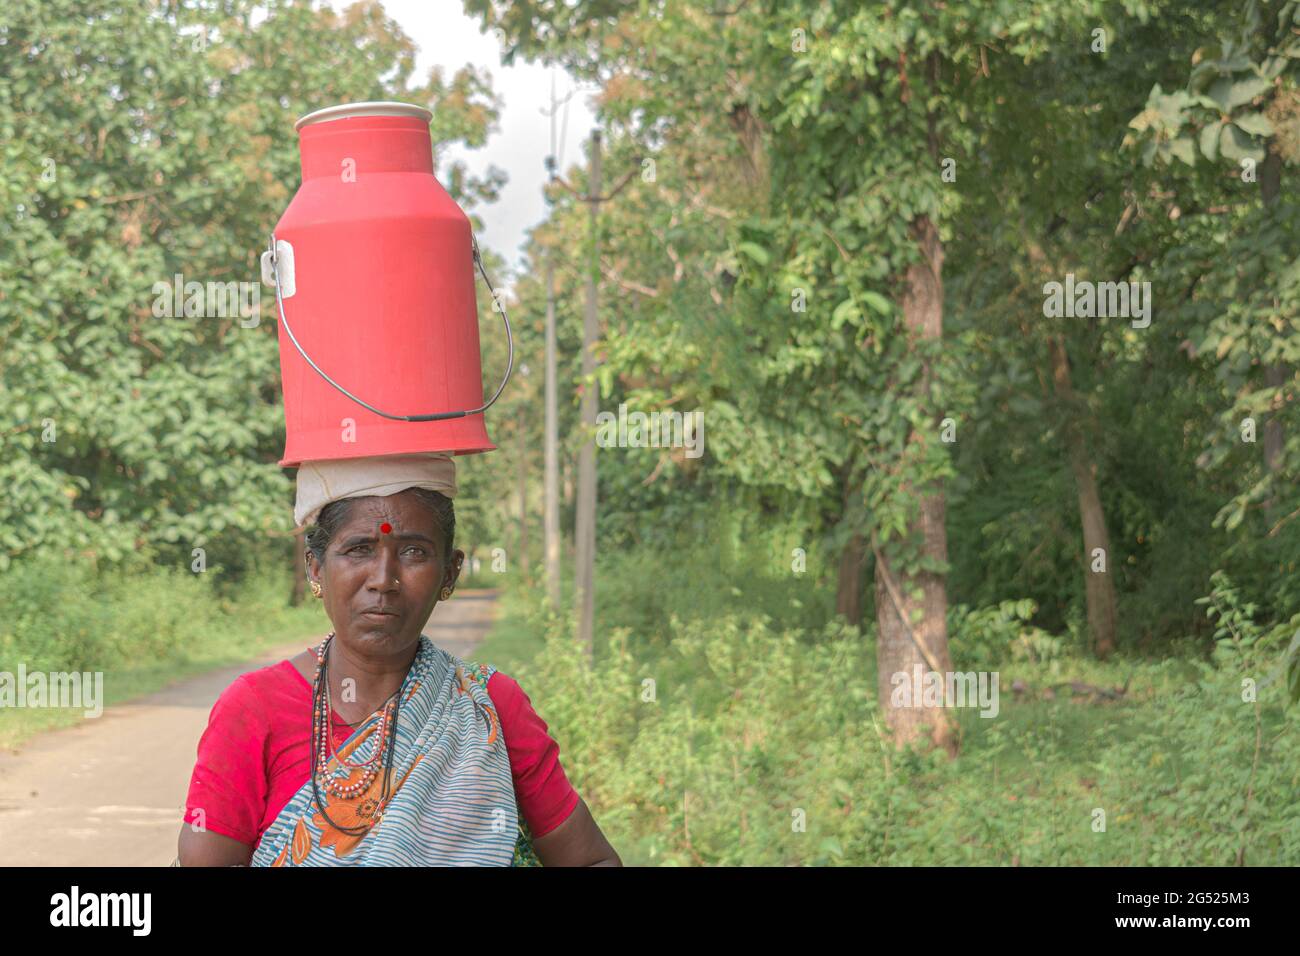 Femme indienne tribale habilitée à porter des vêtements ethniques, transportant un récipient à lait sur la tête pour le livrer de porte à porte pour les clients. Femme d'âge moyen travaillant dur. Banque D'Images